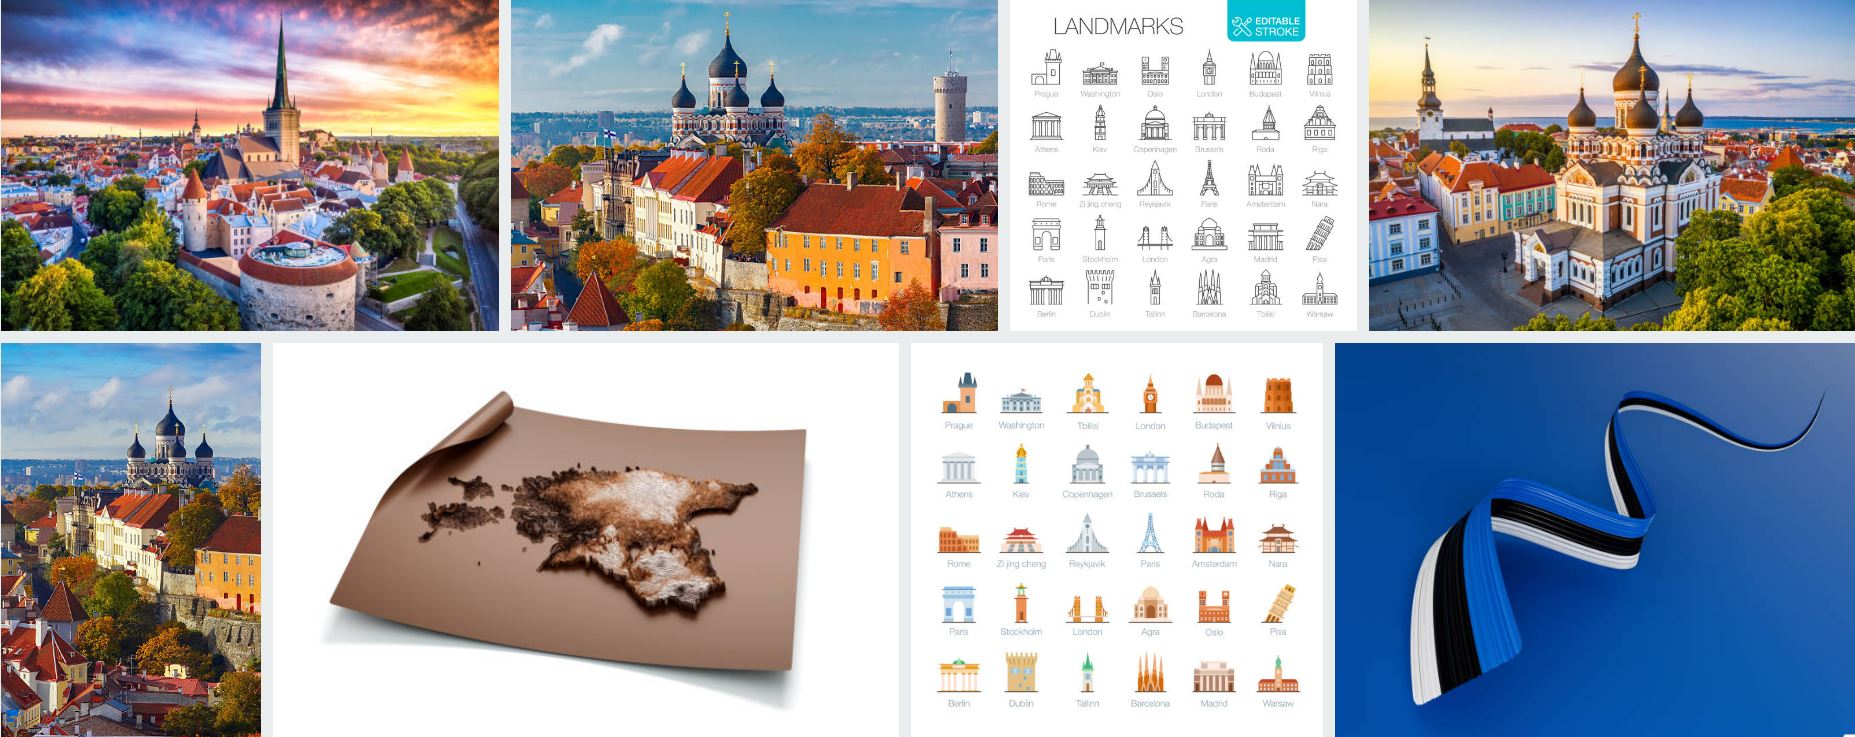 Estonia visa images